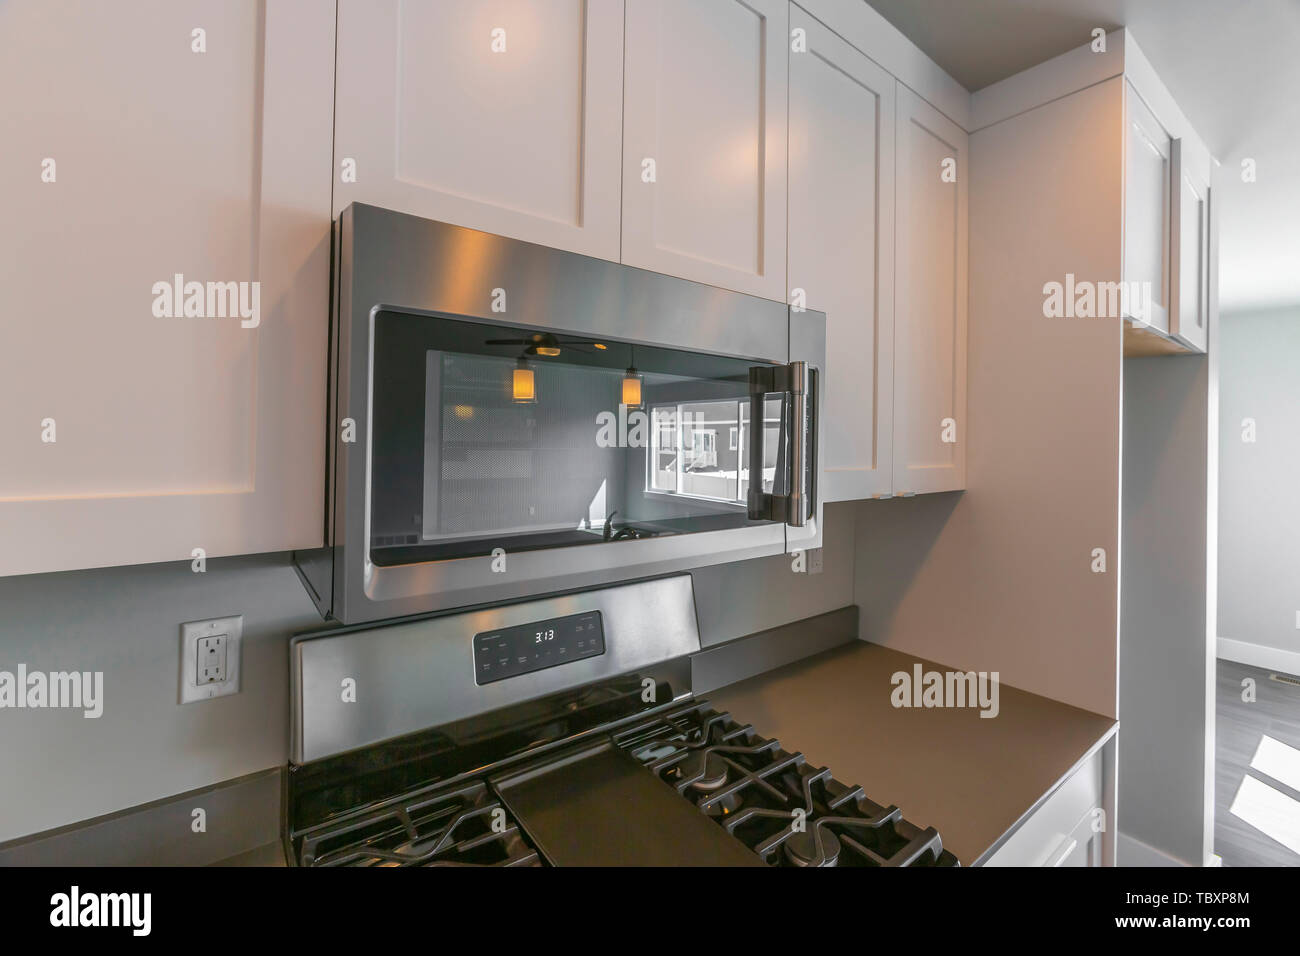 Nahaufnahme der Mikrowelle und Holz- Schränke an der Wand eines Küche  montiert Stockfotografie - Alamy